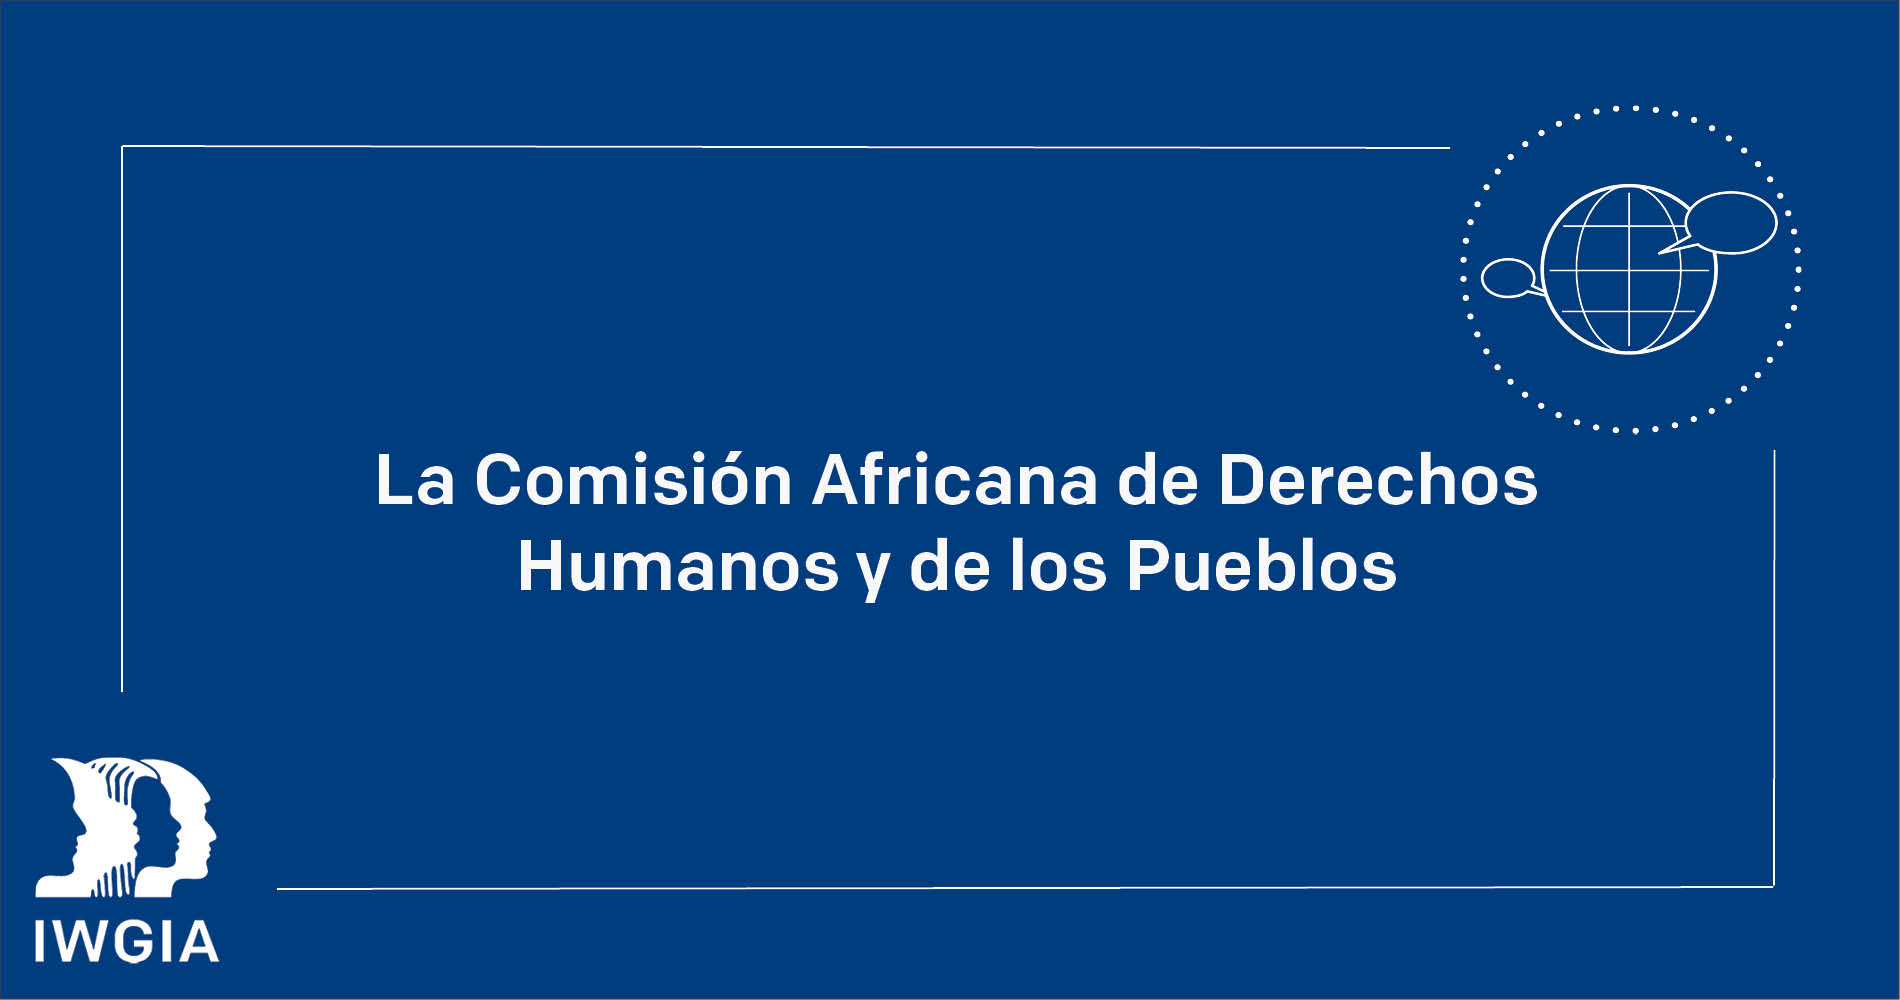 La Comisión Africana de Derechos Humanos y de los Pueblos